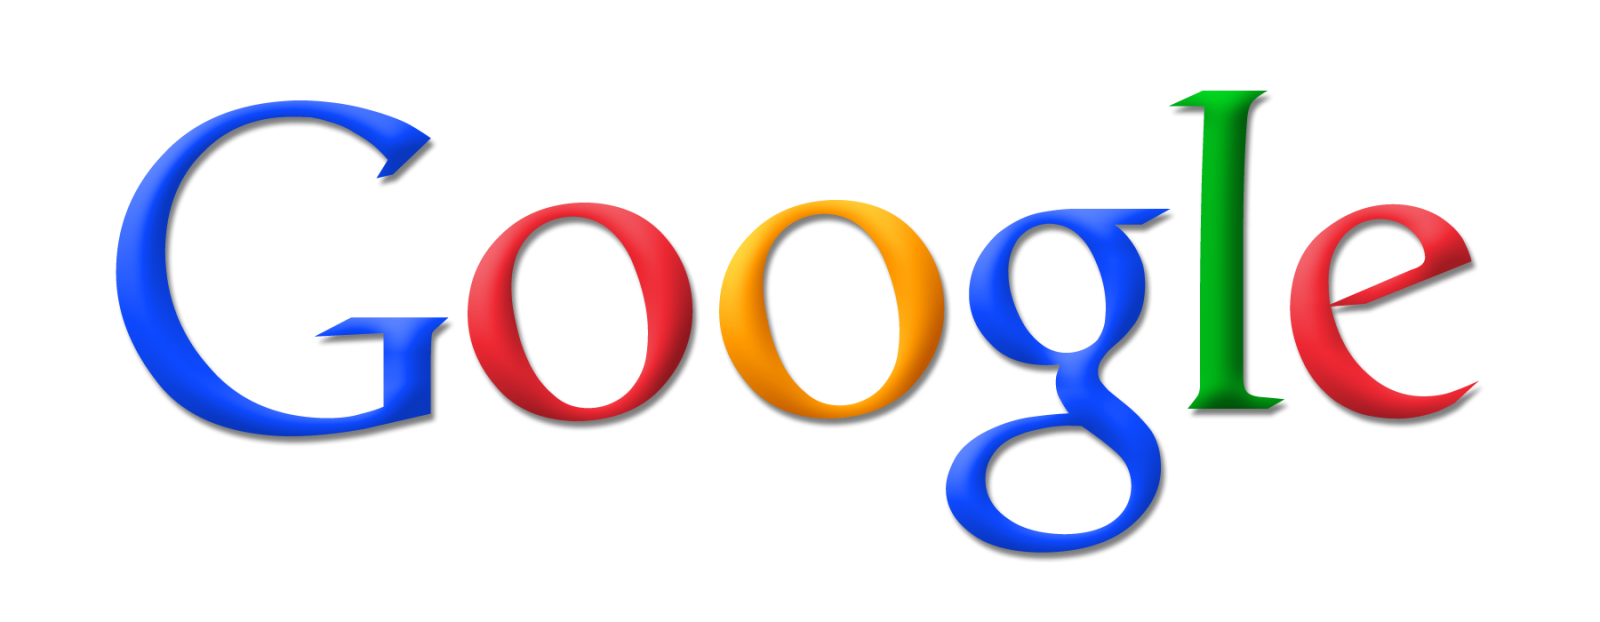 Googlel logo